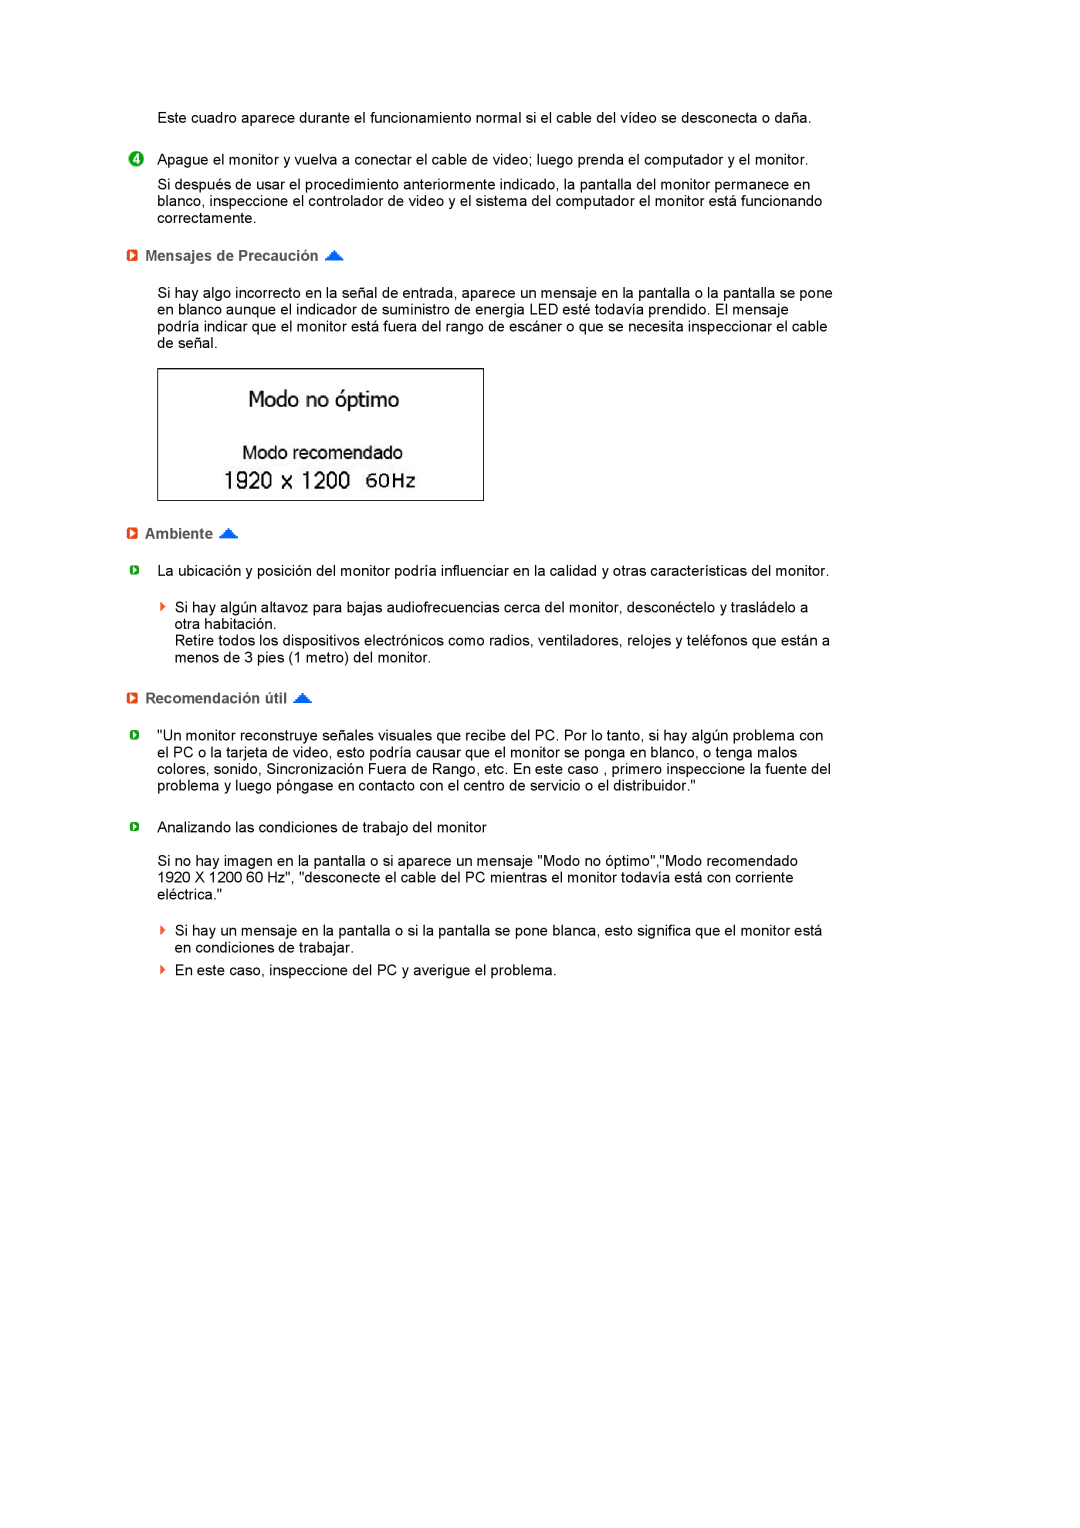 Samsung LS27HUBCB/EDC, LS27HUBCBS/EDC manual Mensajes de Precaución, Ambiente, Recomendación útil 